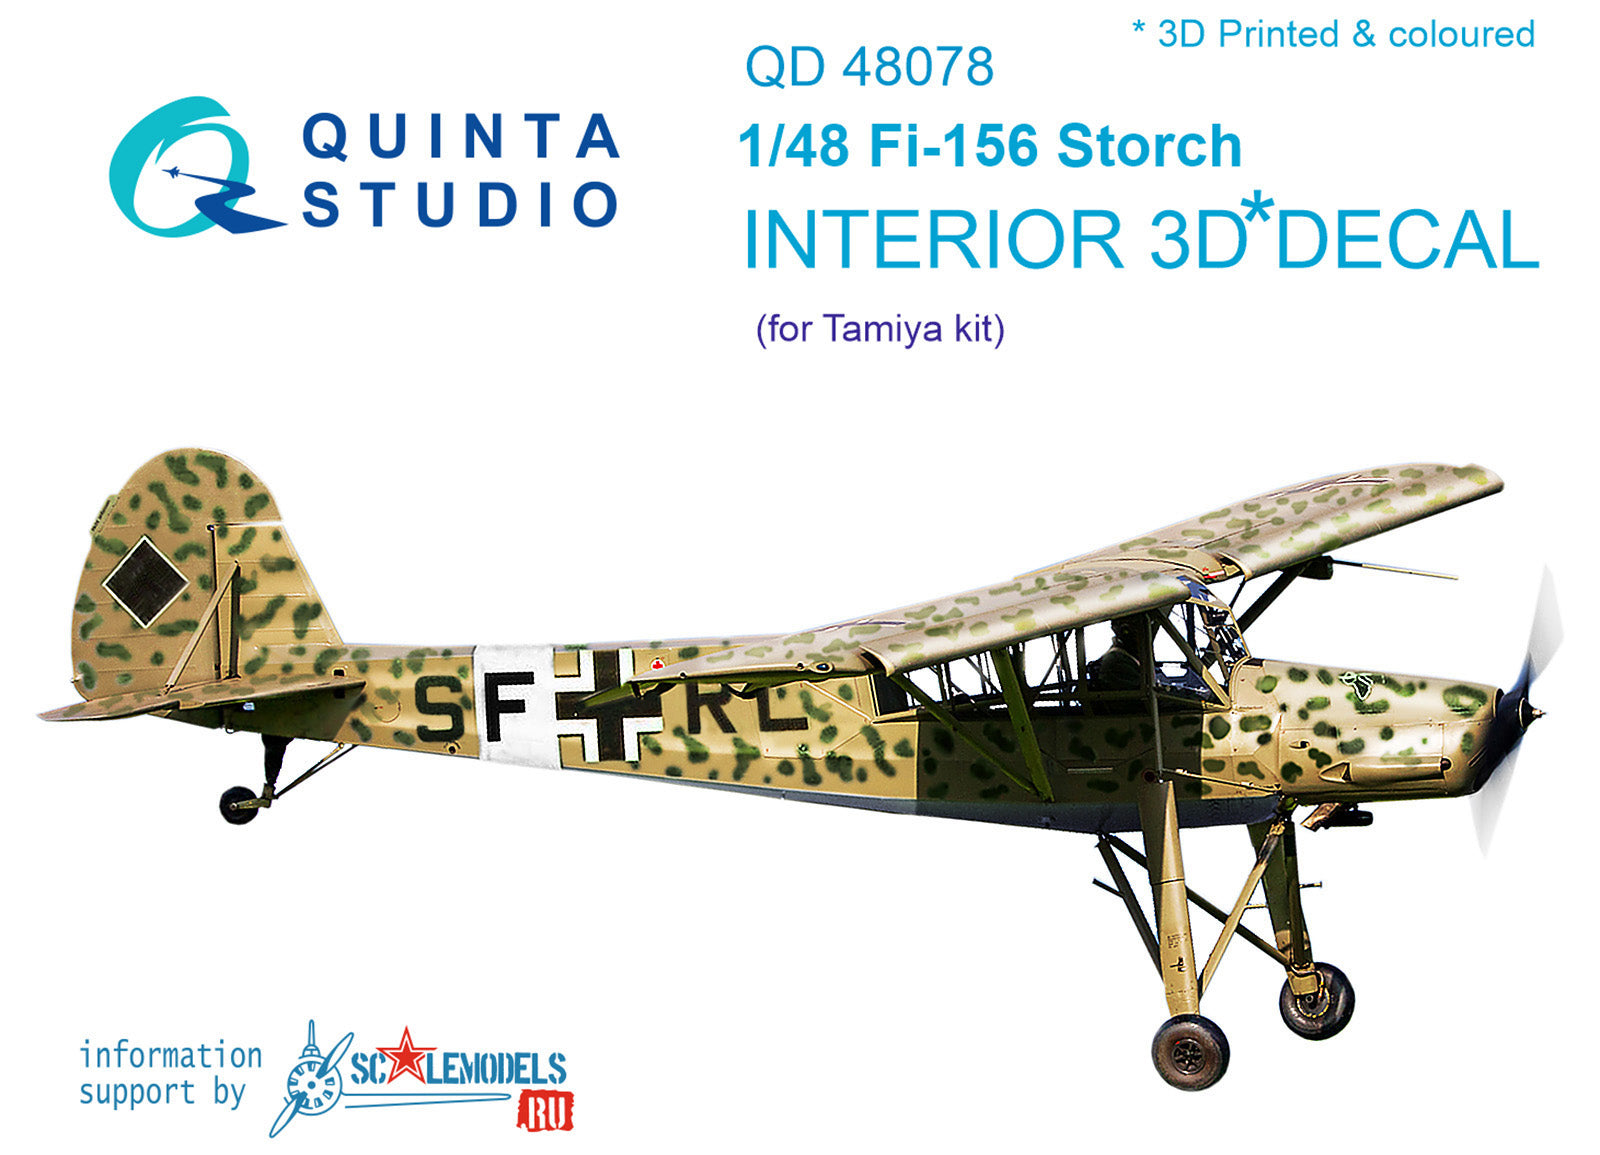 Quinta Studio - 1/48 Fi-156 QD48078 for Tamiya kit